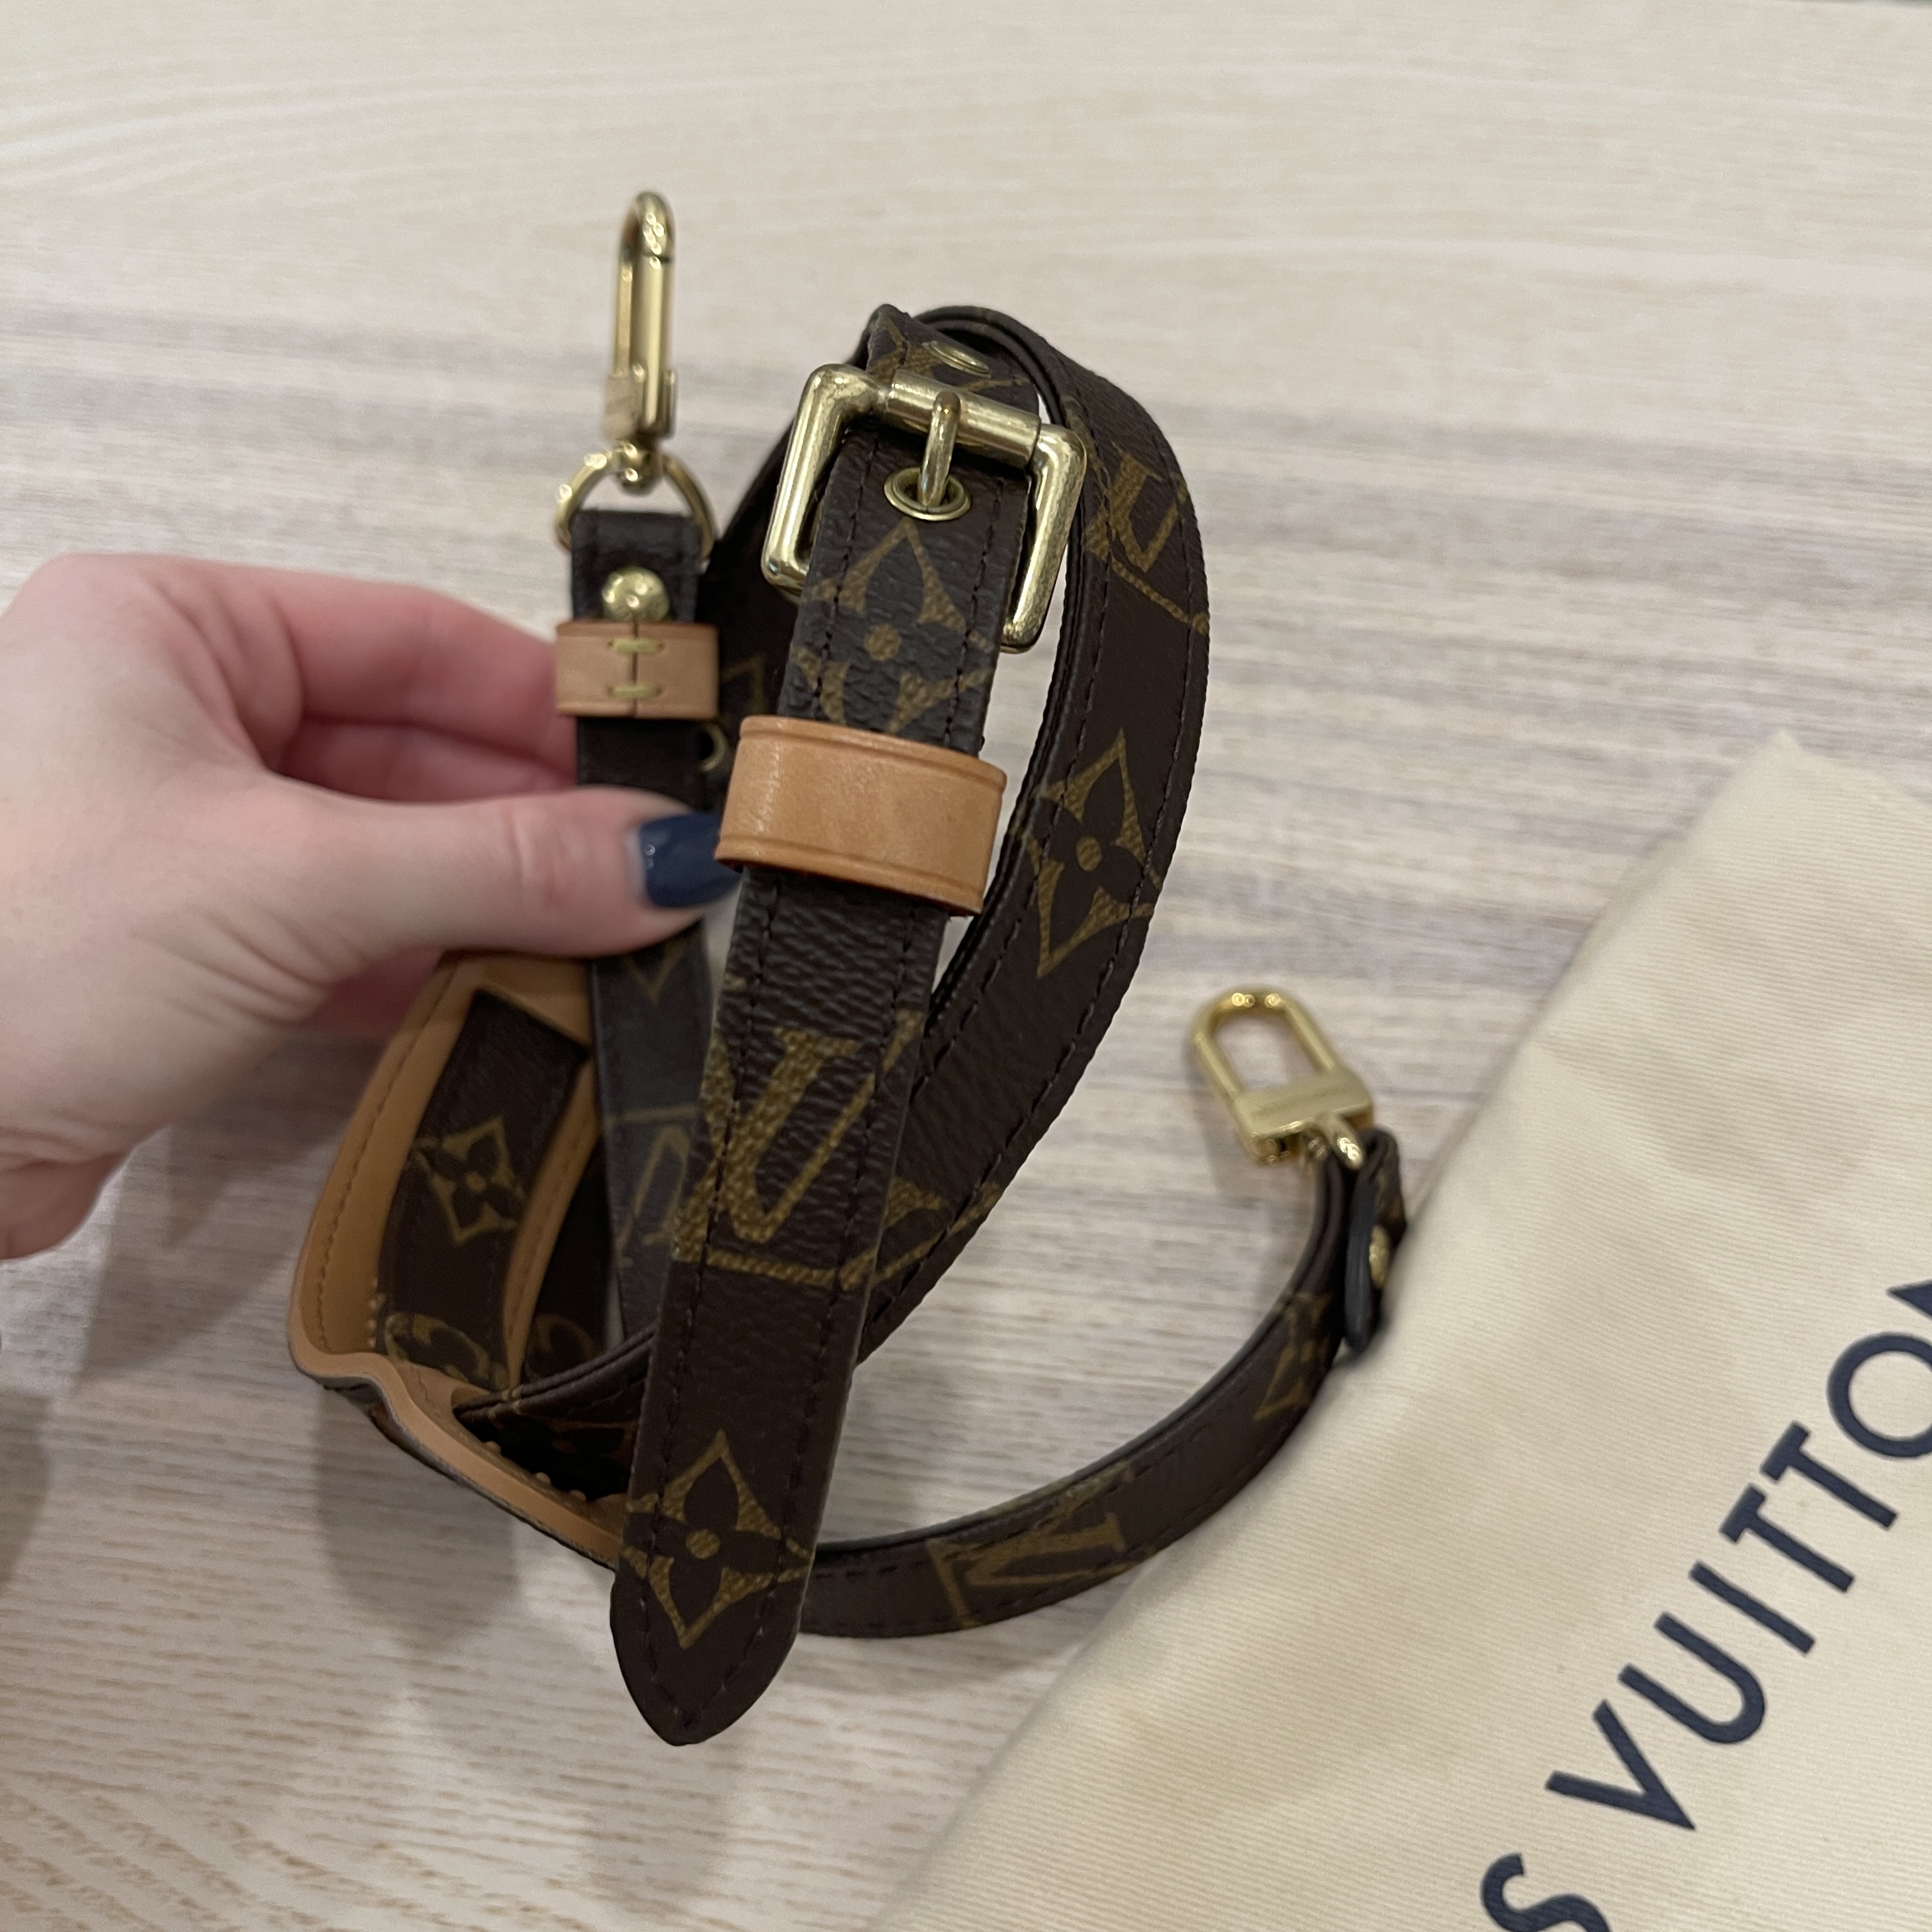 Adjustable Shoulder Strap 16 mm VVN / Louis Vuitton skulderrem til Speedy  vesken